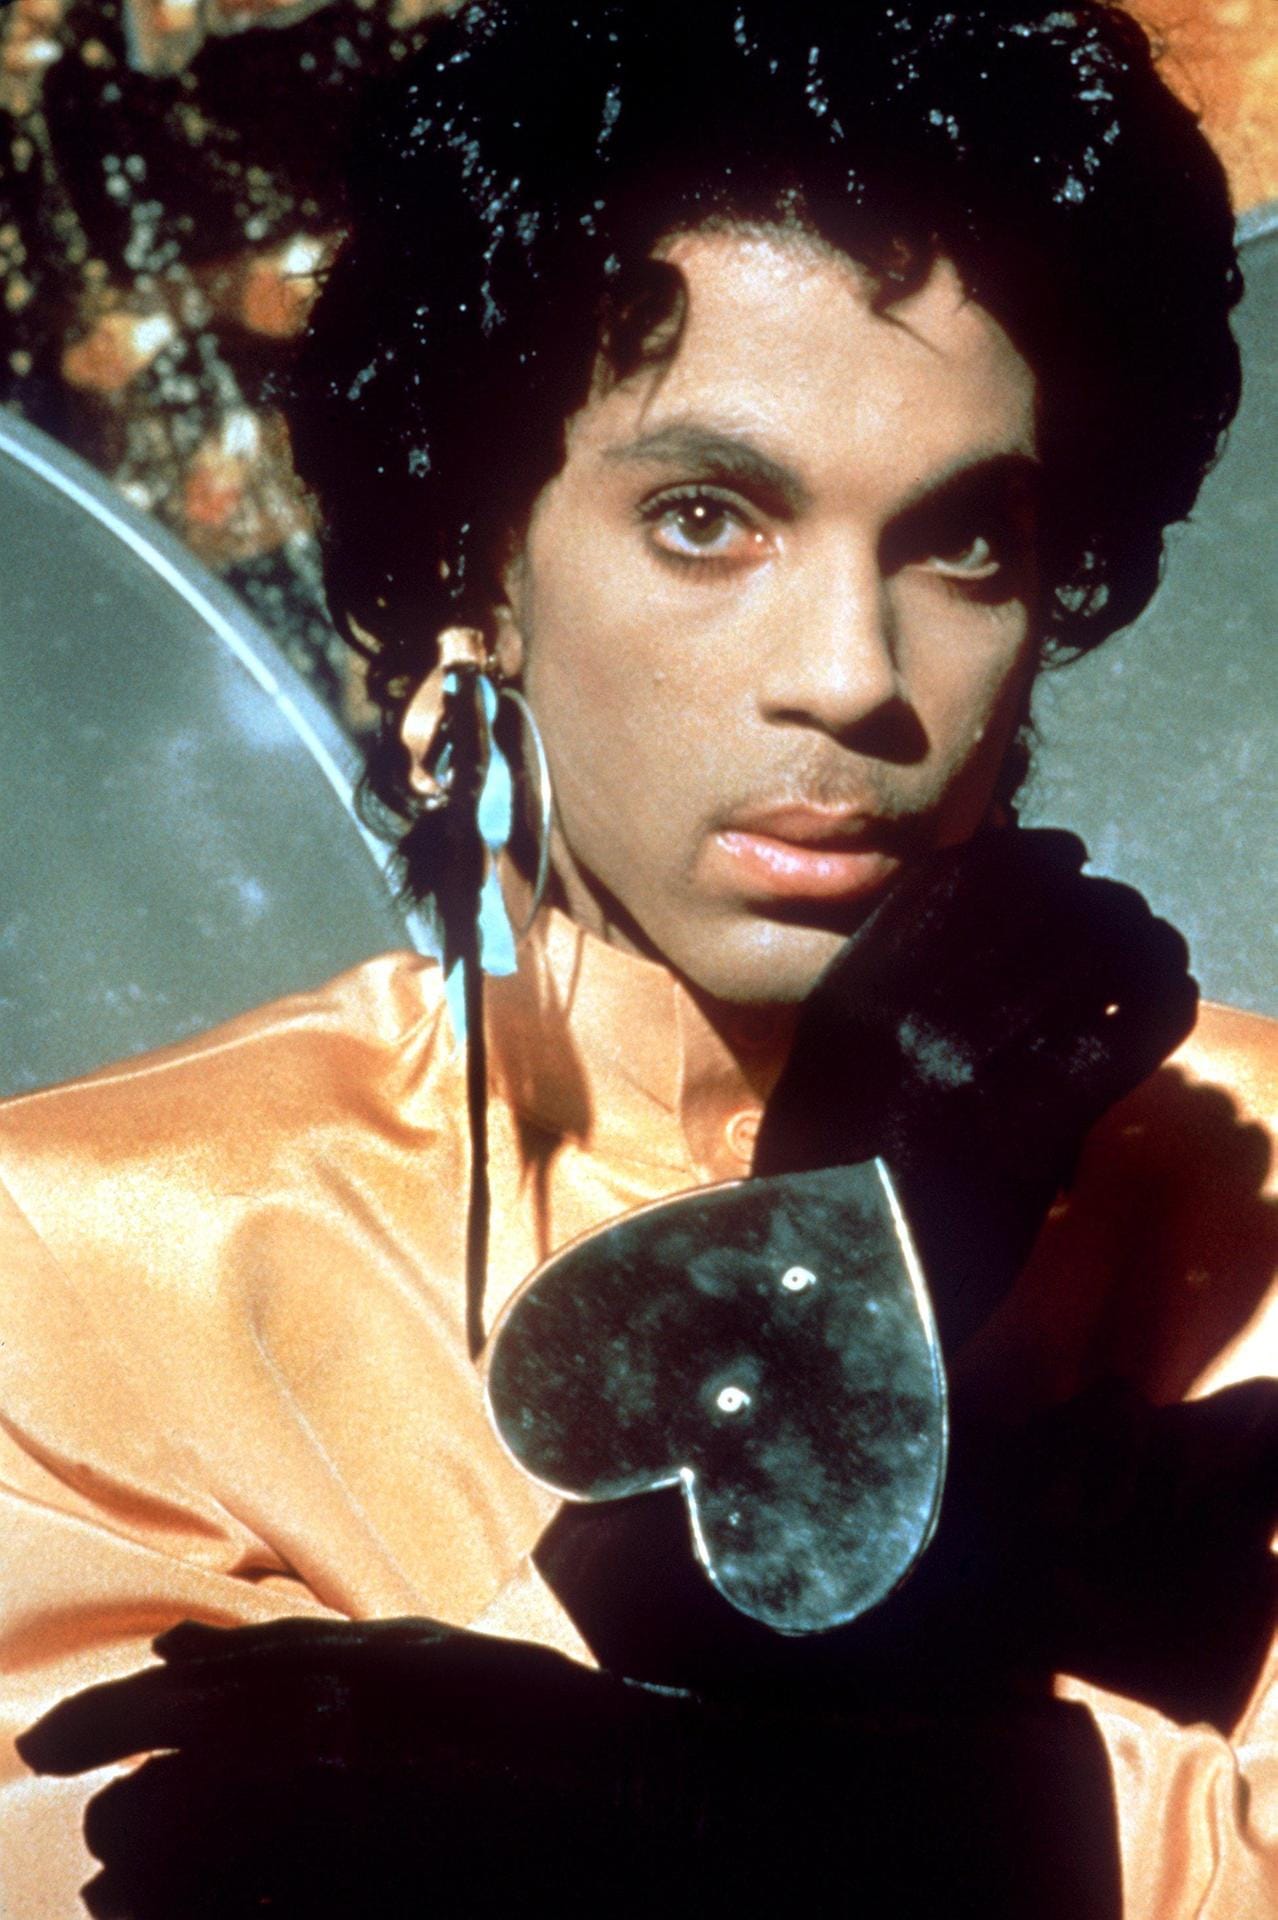 Neben seiner Musik war Prince besonders für seine schrillen Outfits berühmt.